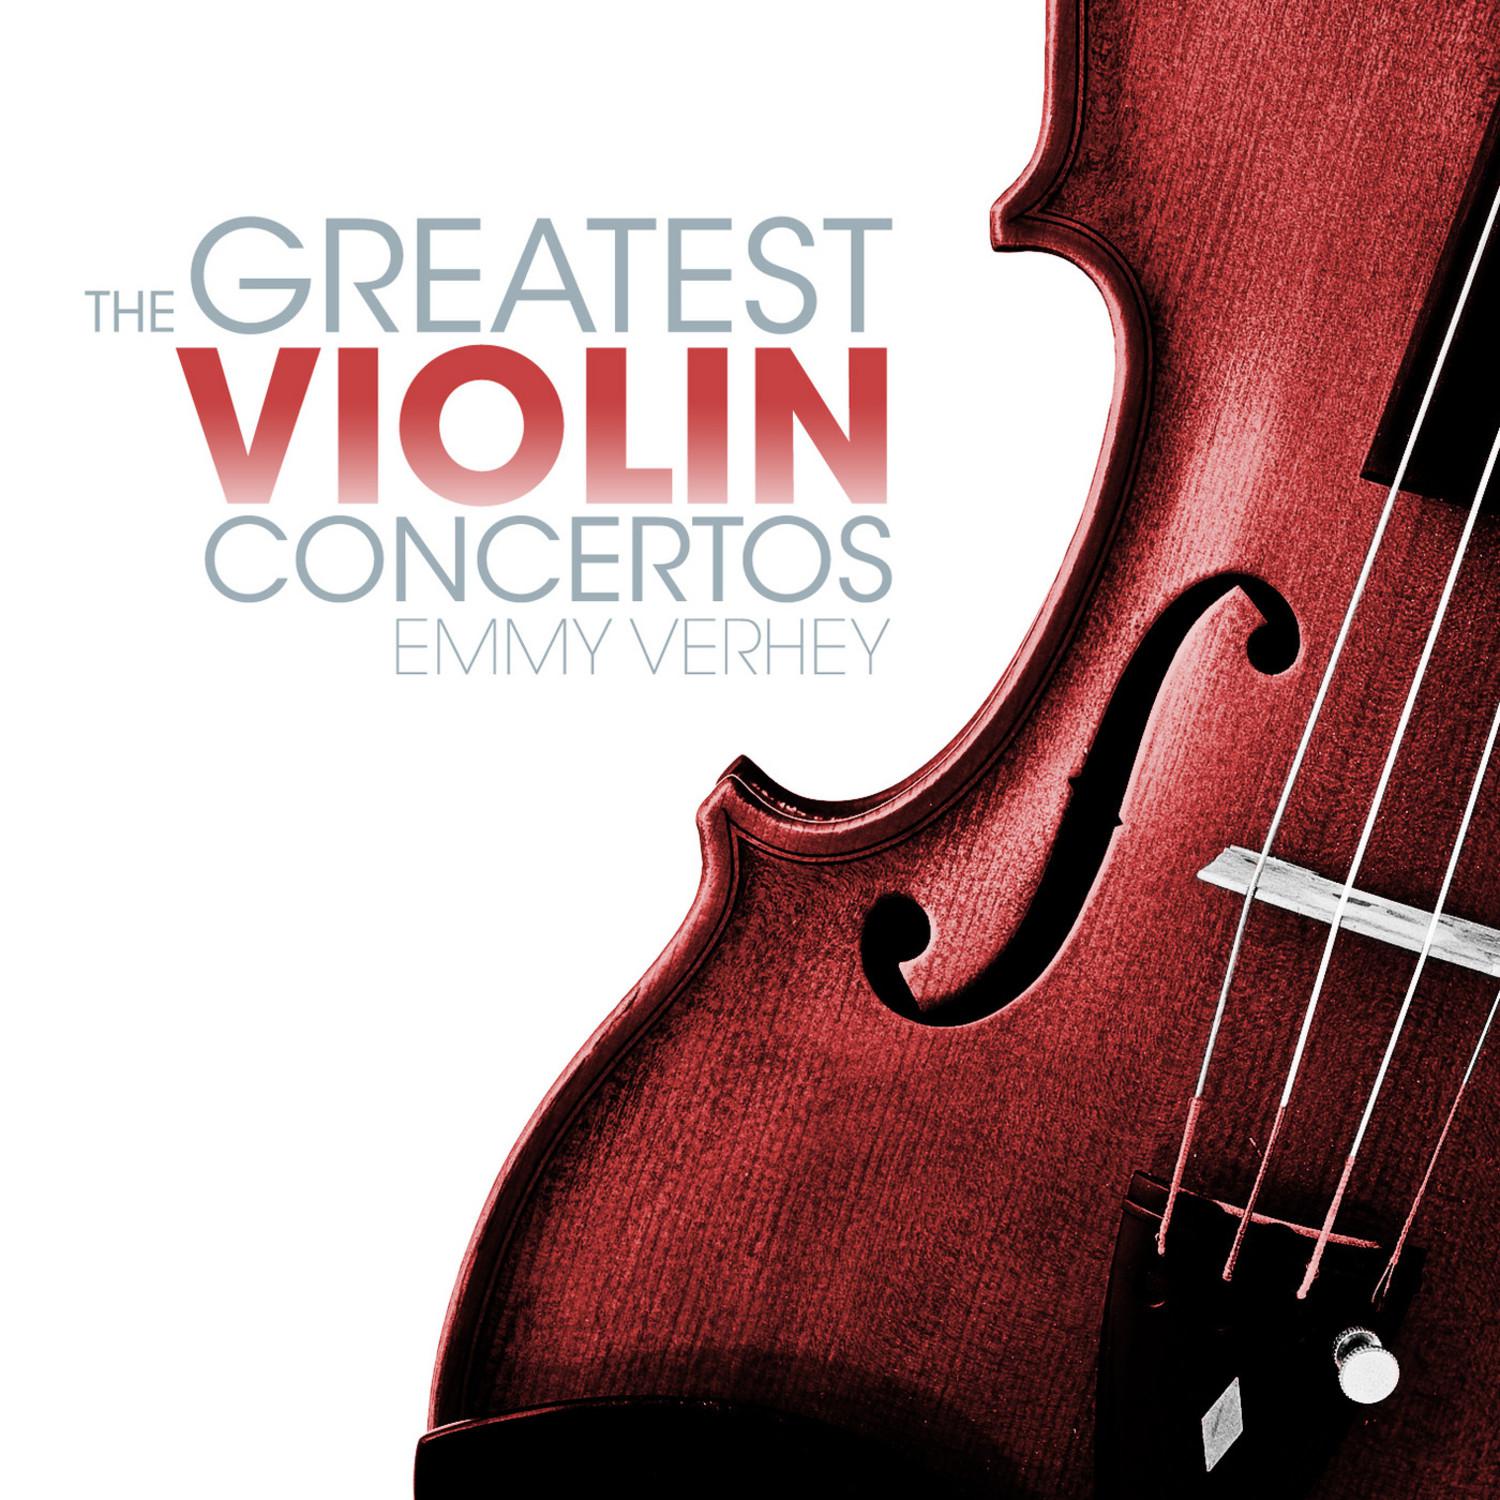 Concerto No. 1 in B-Flat Major for Violin and Orchestra, K. 207: I. Allegro moderato